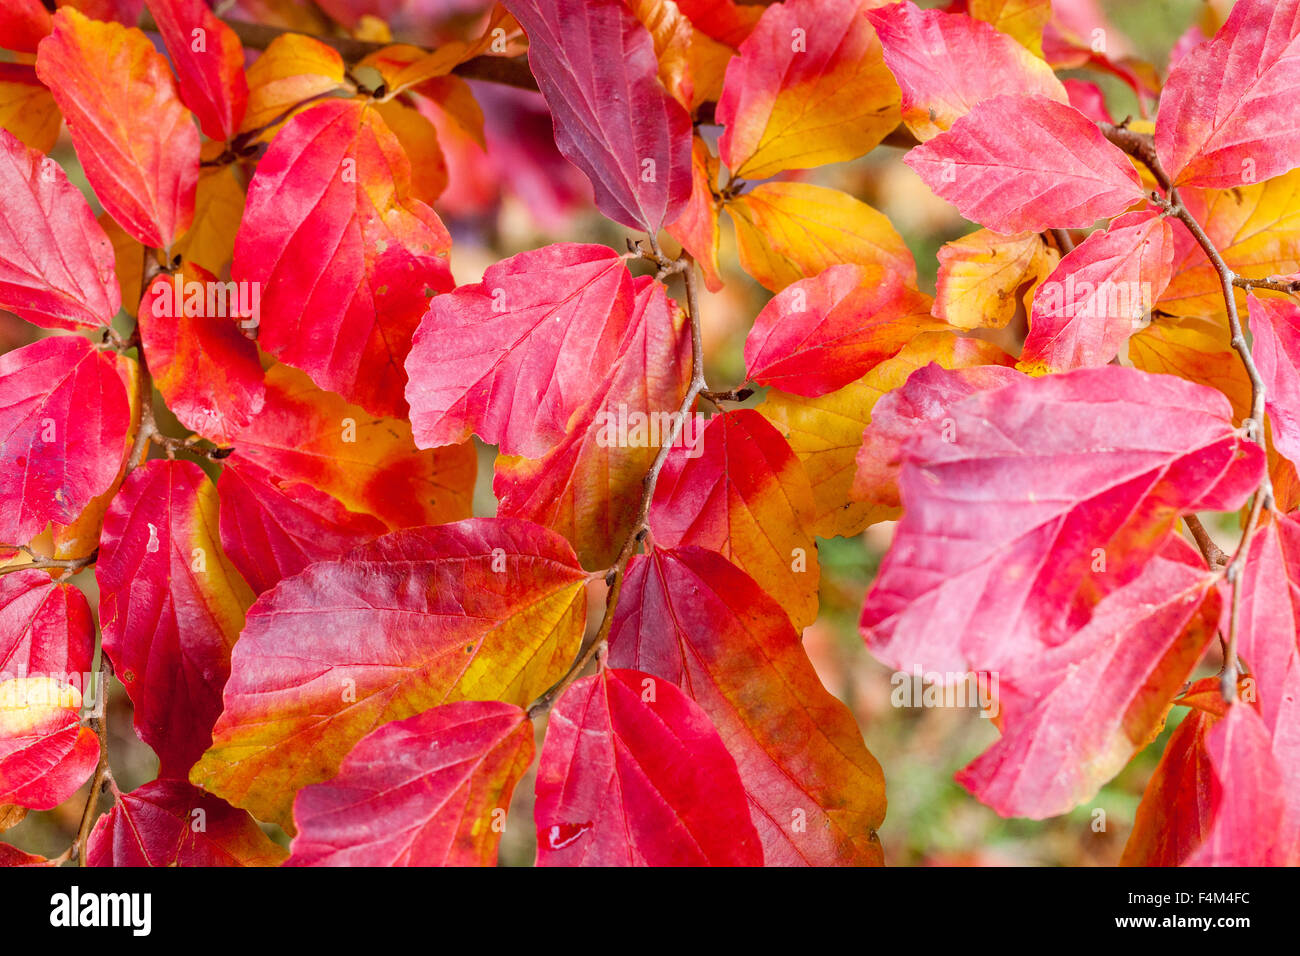 madera de hierro persa, parrotia persica, hojas de otoño rojo brillante árbol caducifolio Foto de stock